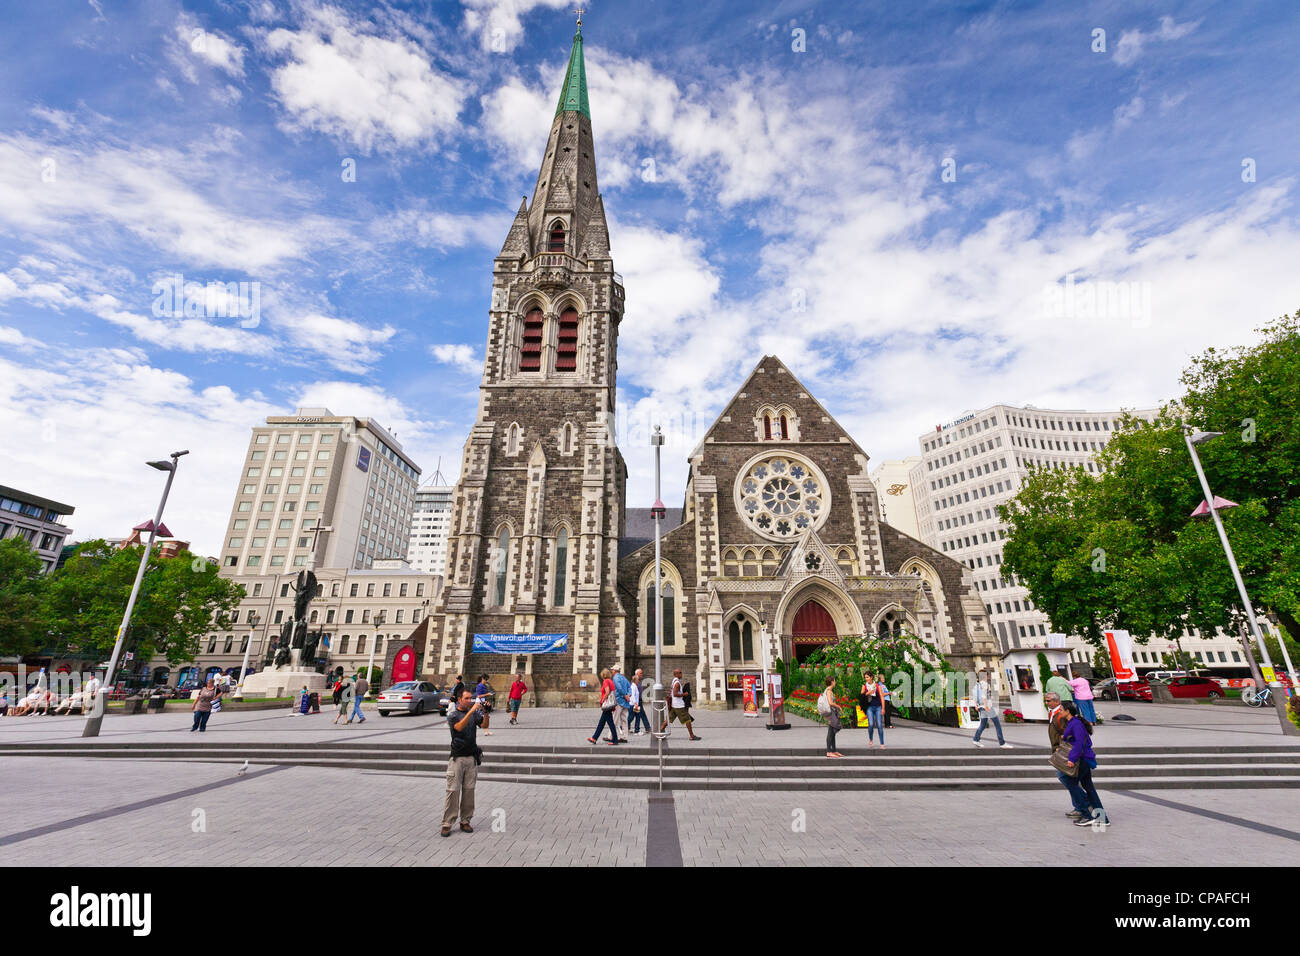 Les visiteurs à la place de la Cathédrale, Christchurch, sur un jour nuageux lumineux en été. Banque D'Images